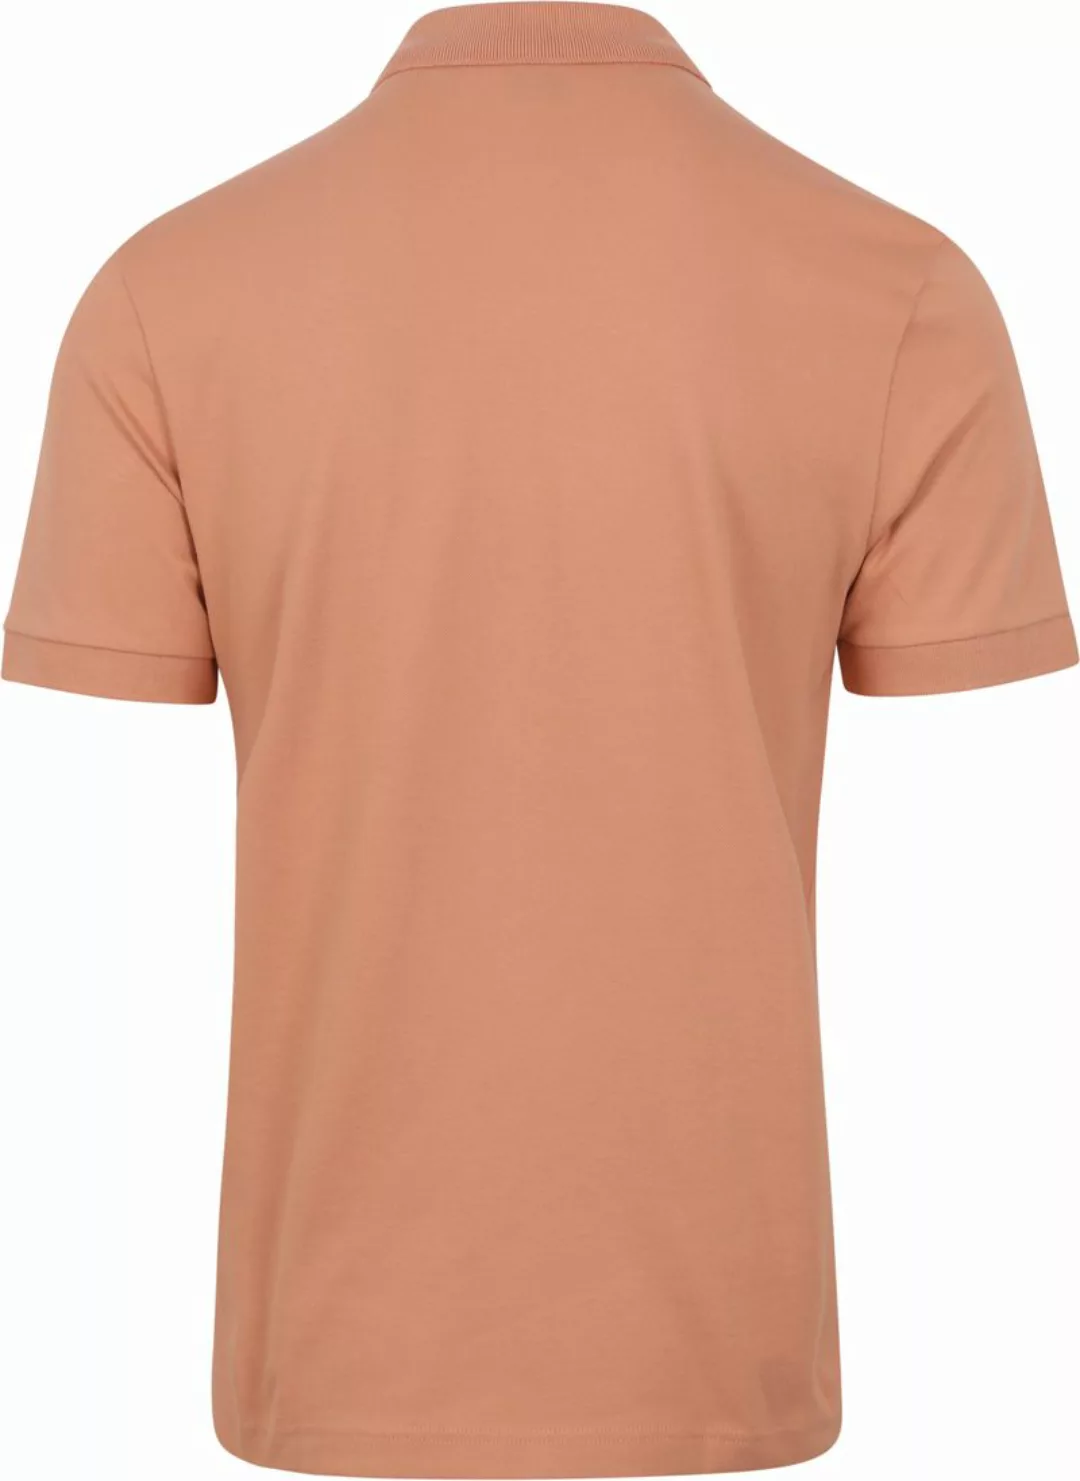 BOSS Polo Shirt Passenger Peach - Größe 3XL günstig online kaufen